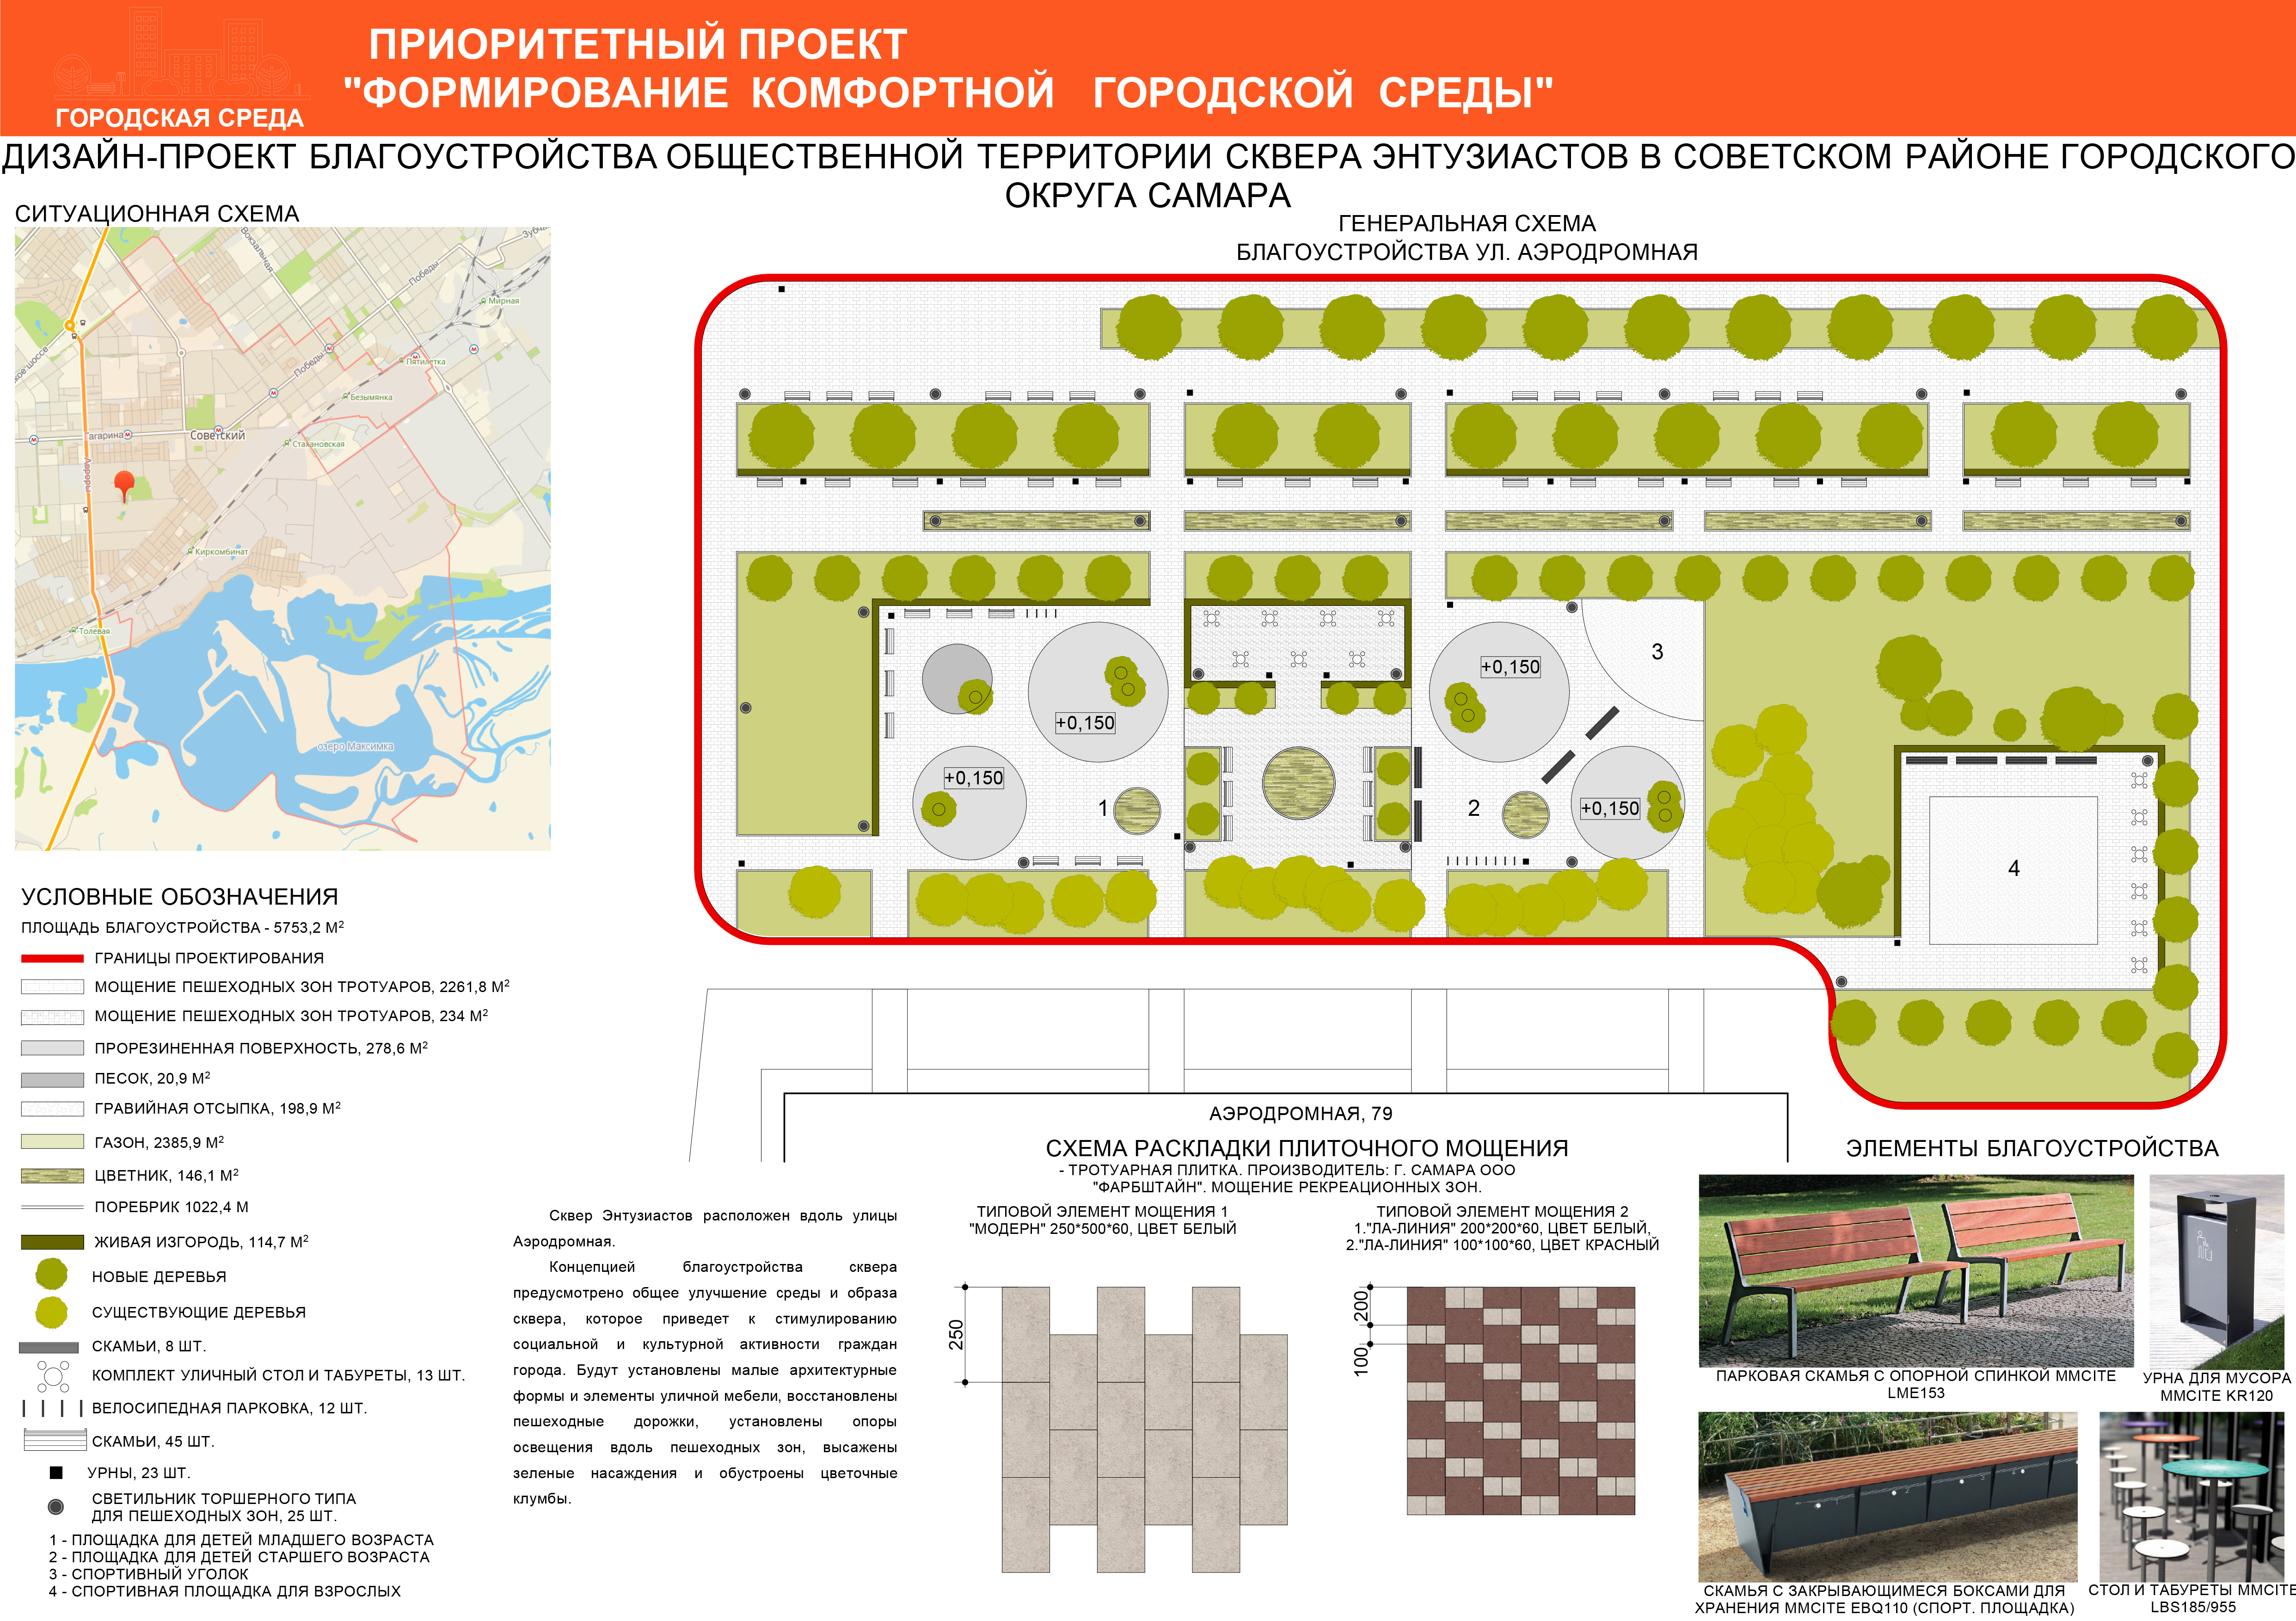 Схема озеленения города